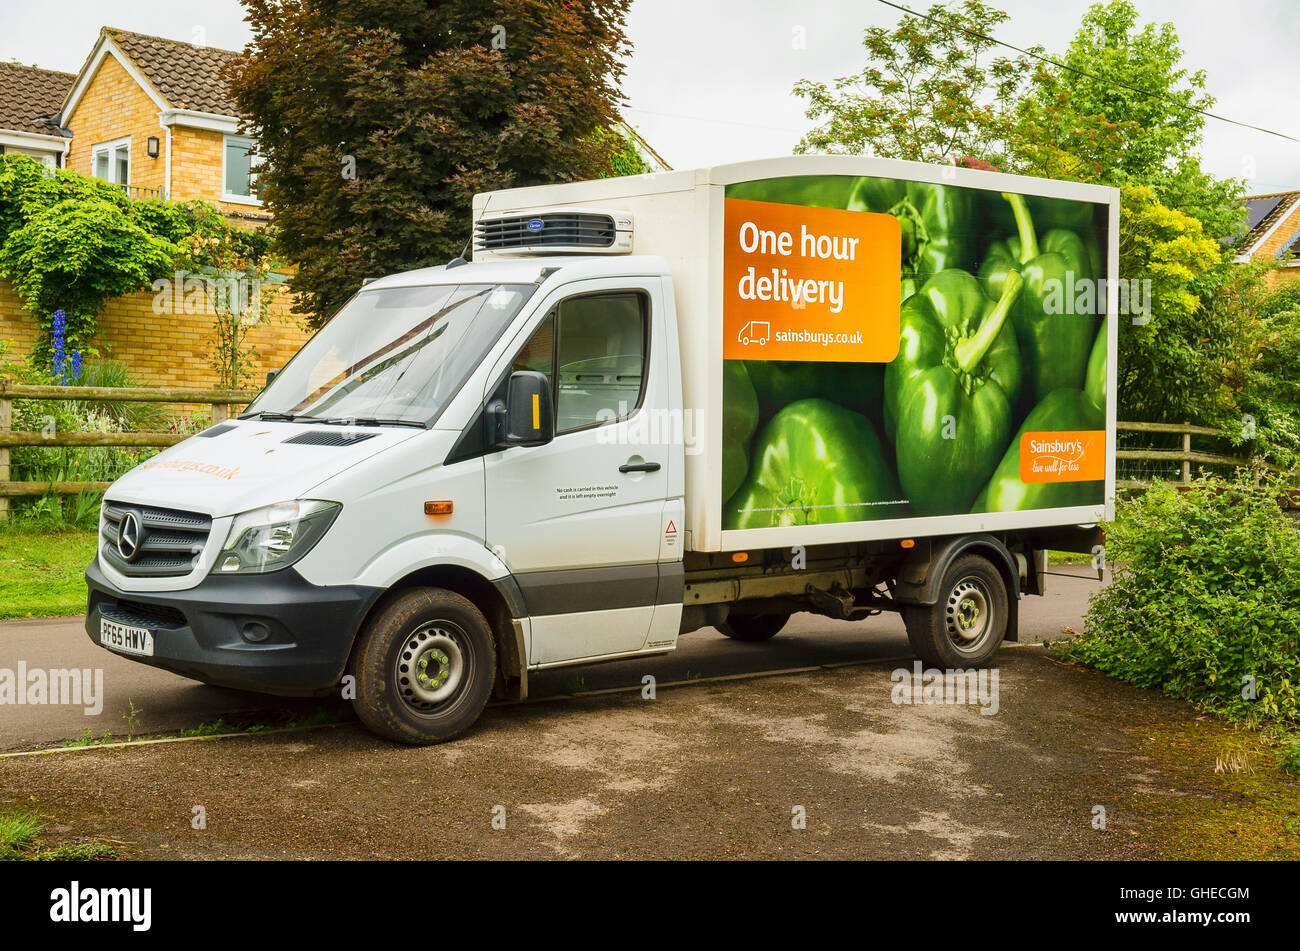 Sainsburys accueil delivery van dans un hameau Wiltshire Banque D'Images